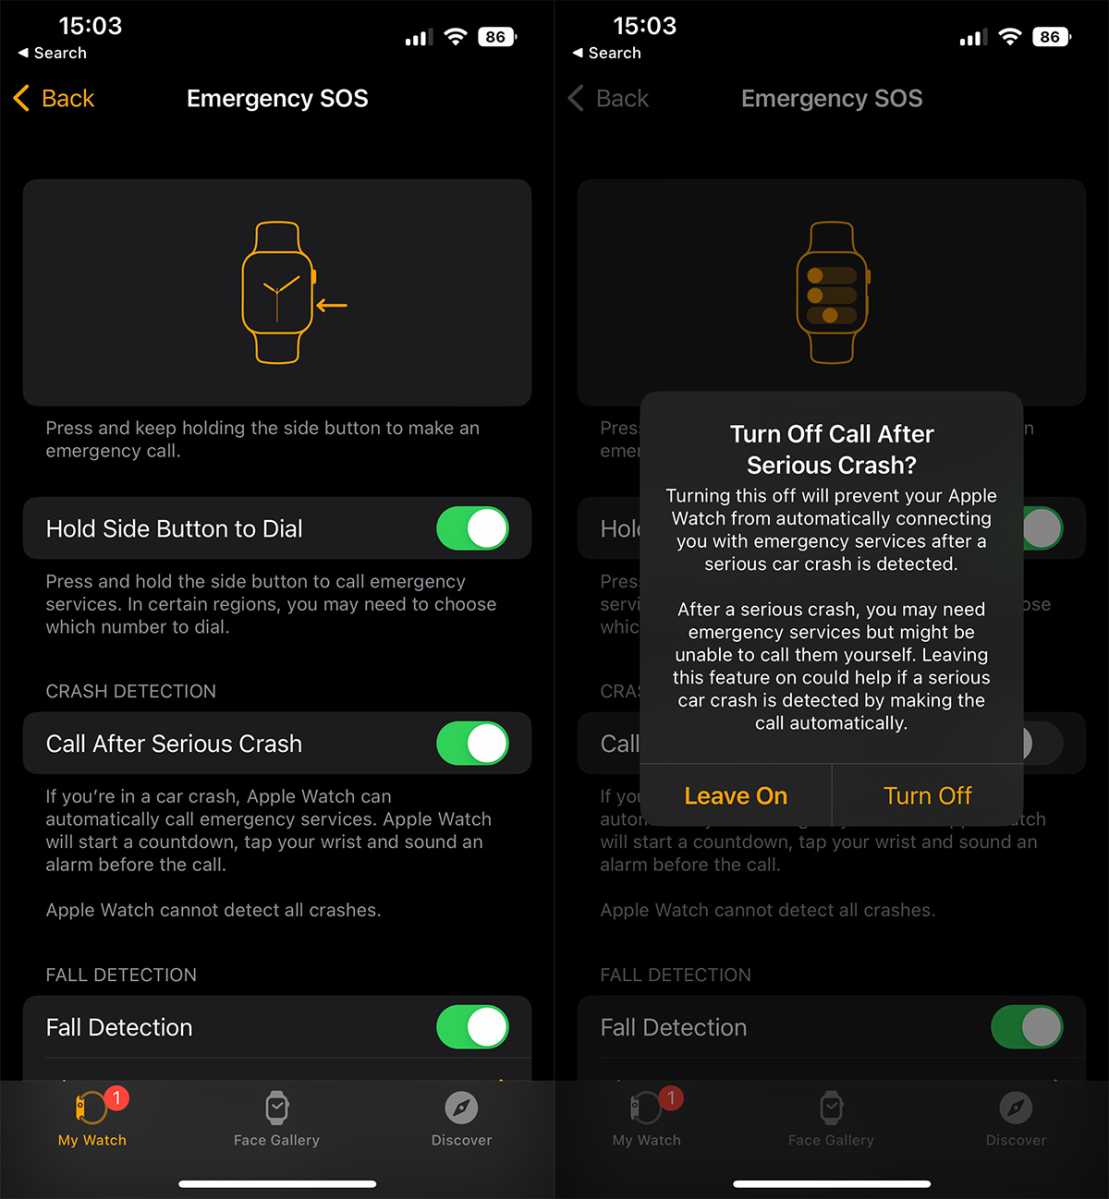 Cara mematikan Deteksi Kerusakan: Hentikan panggilan iPhone & Apple Watch 911